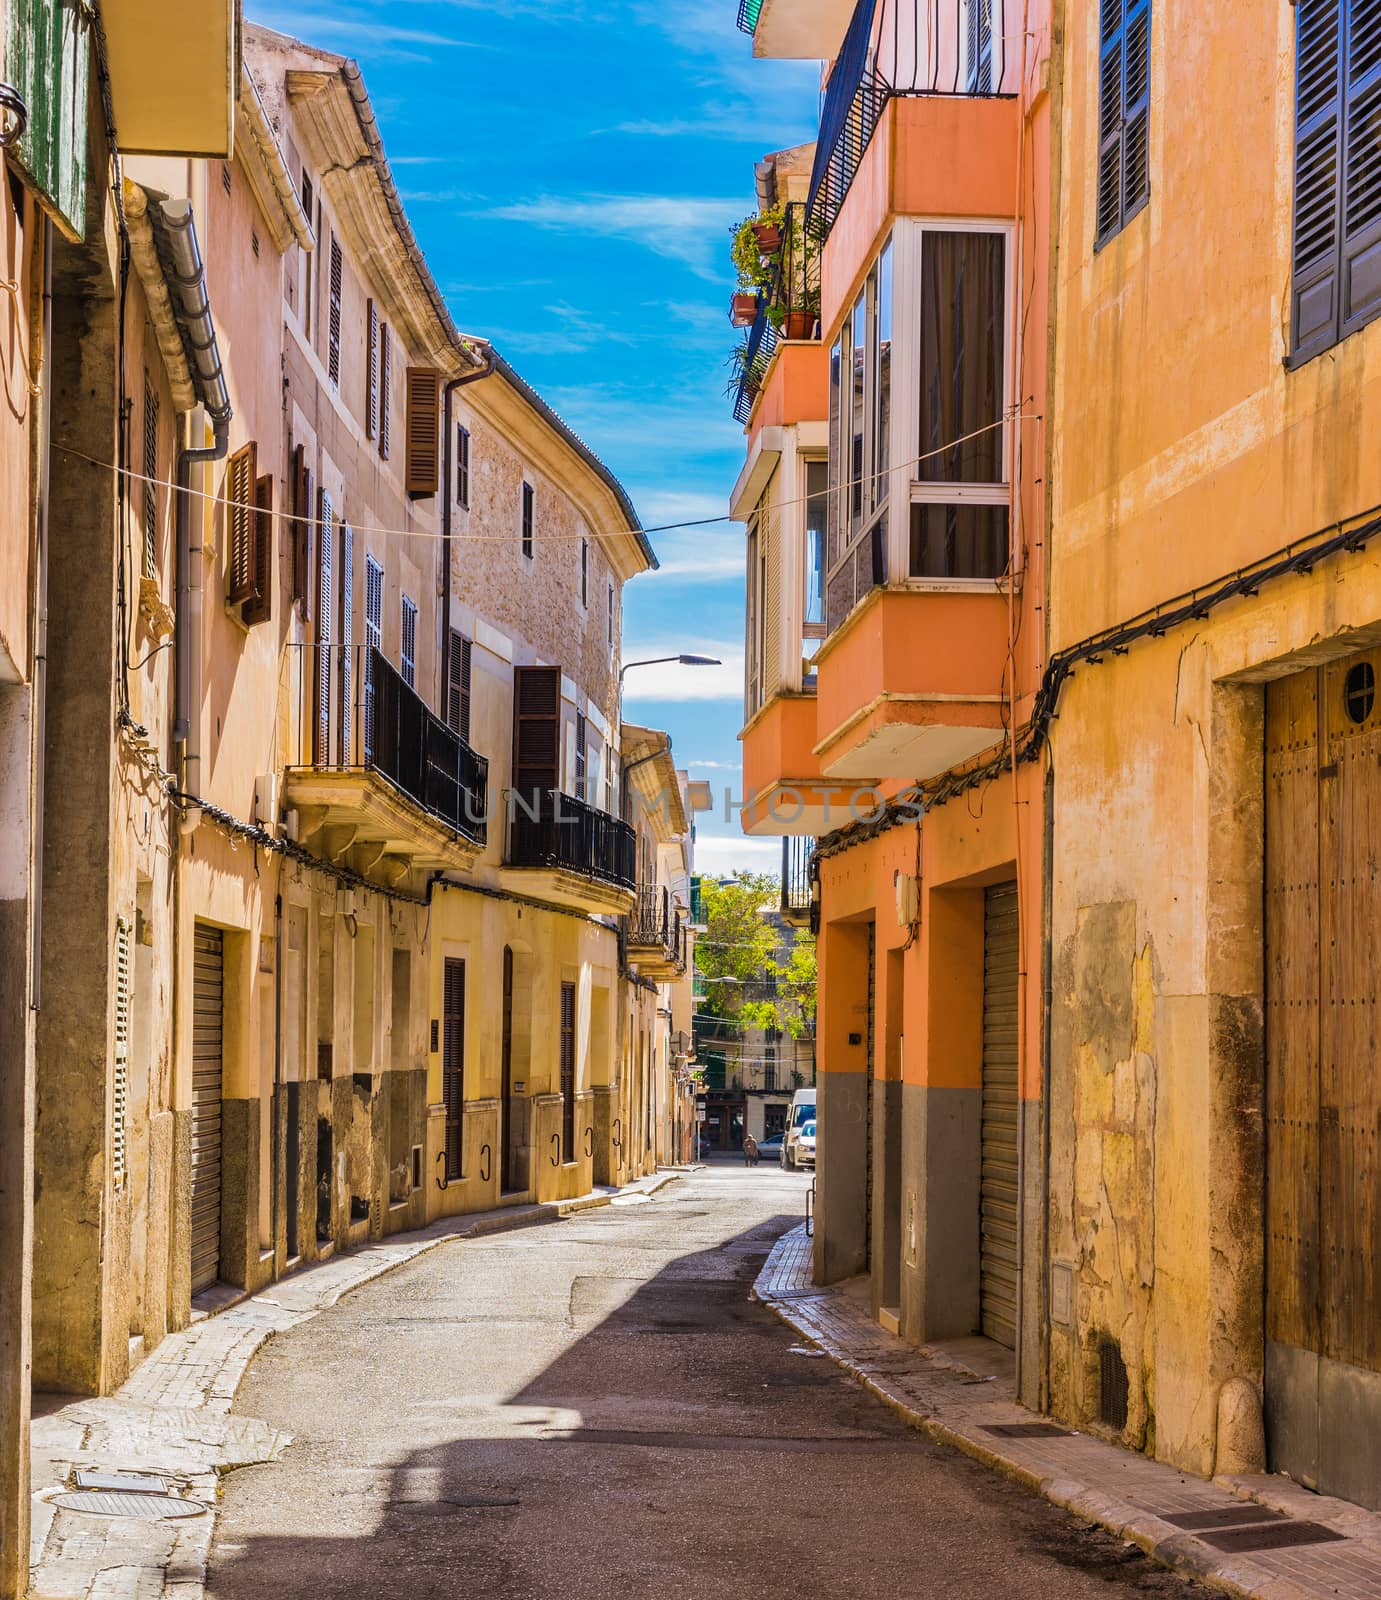 Old town street on Mallorca island, Spain